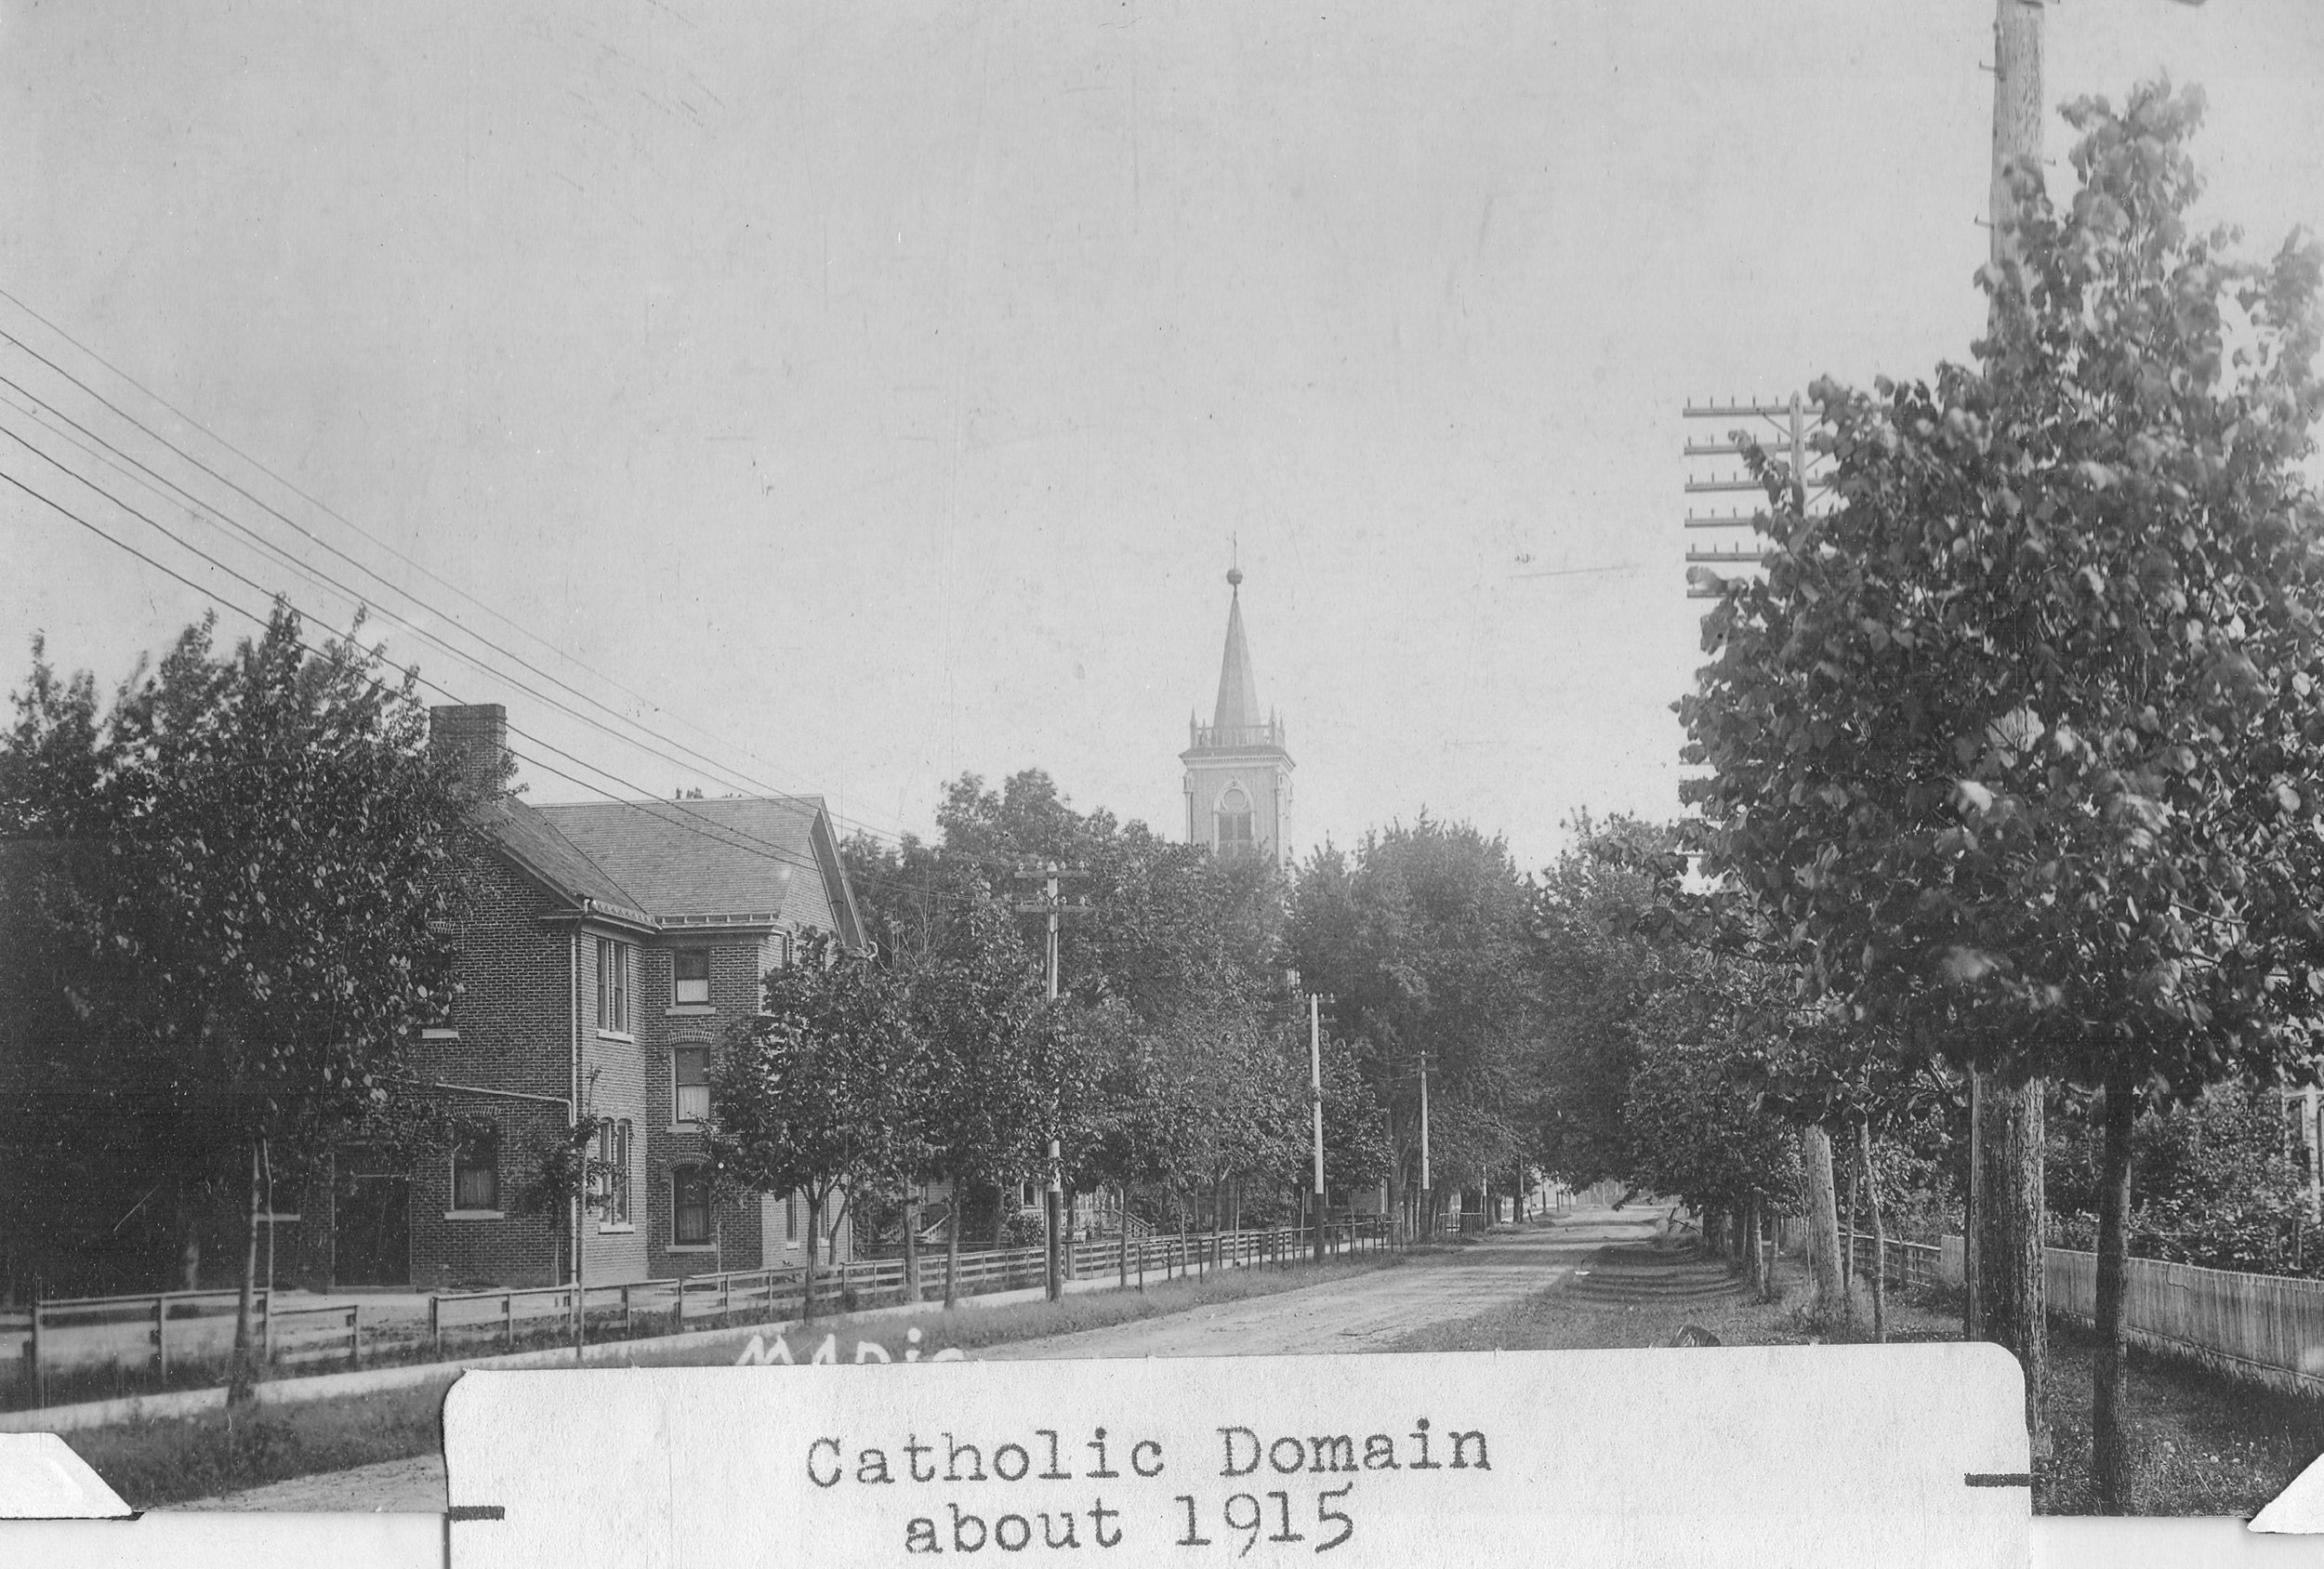 Catholic Domain